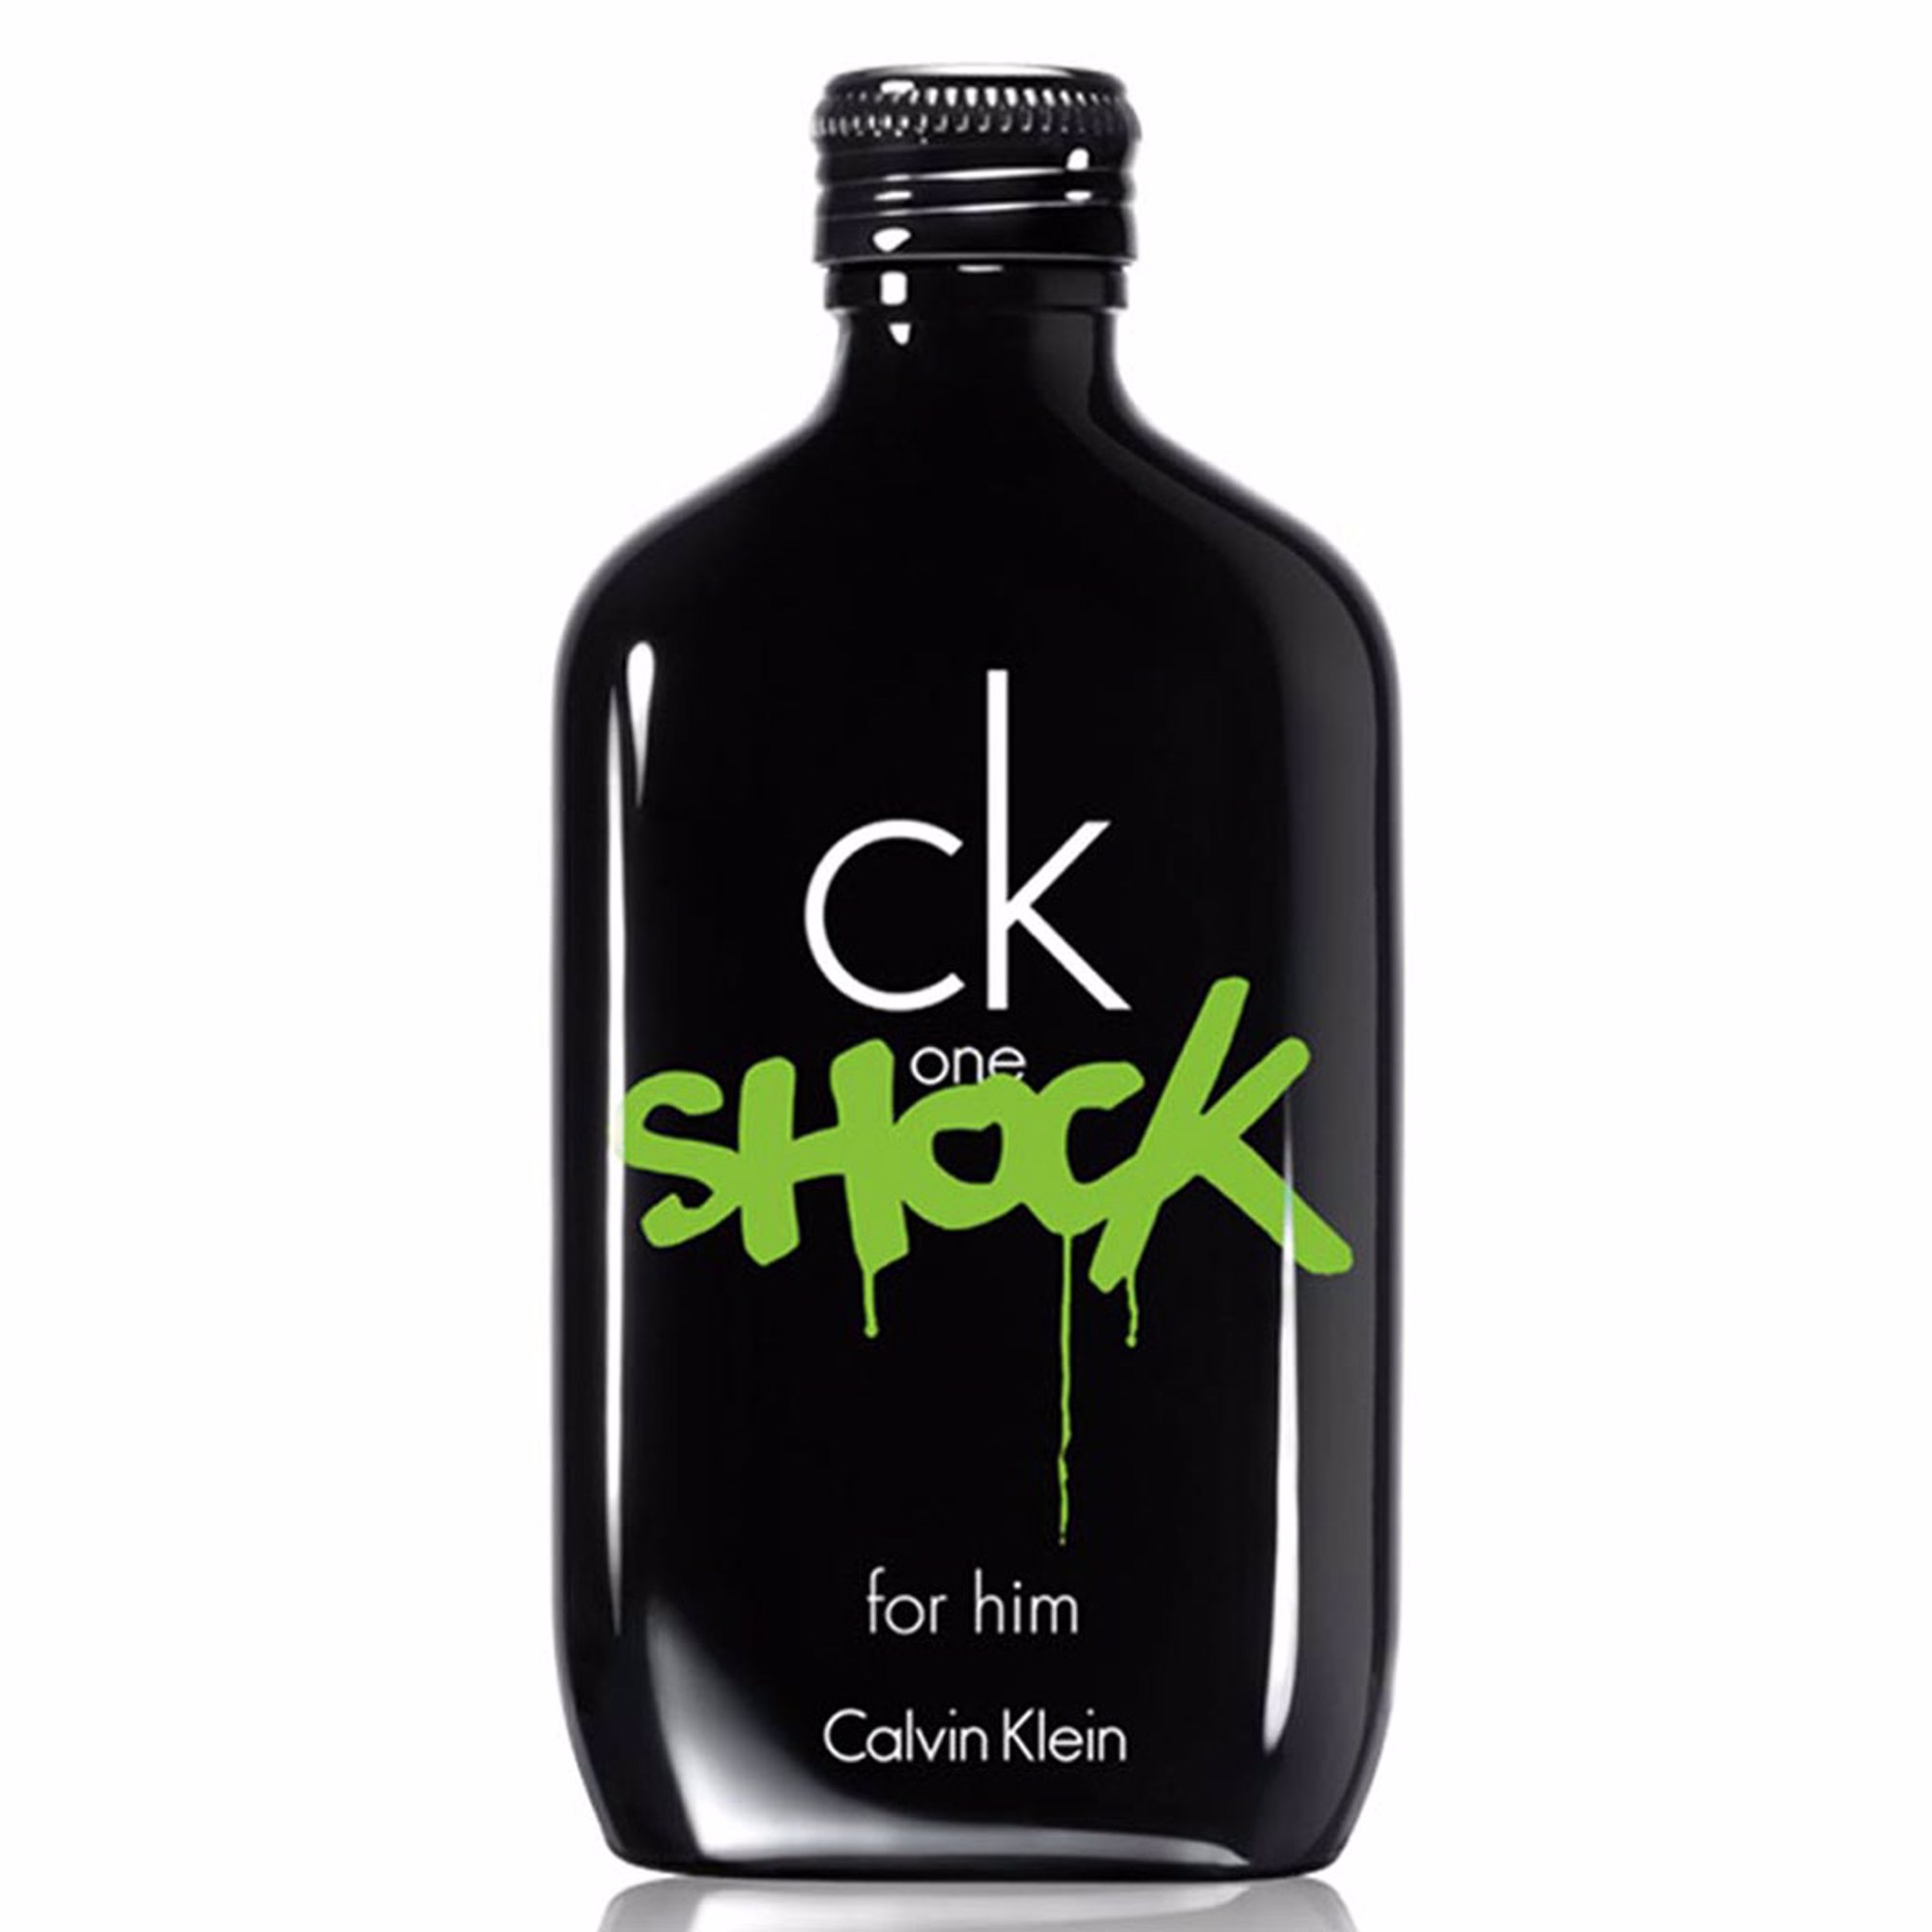 Calvin Klein CK One Shock for Him edt 100ml